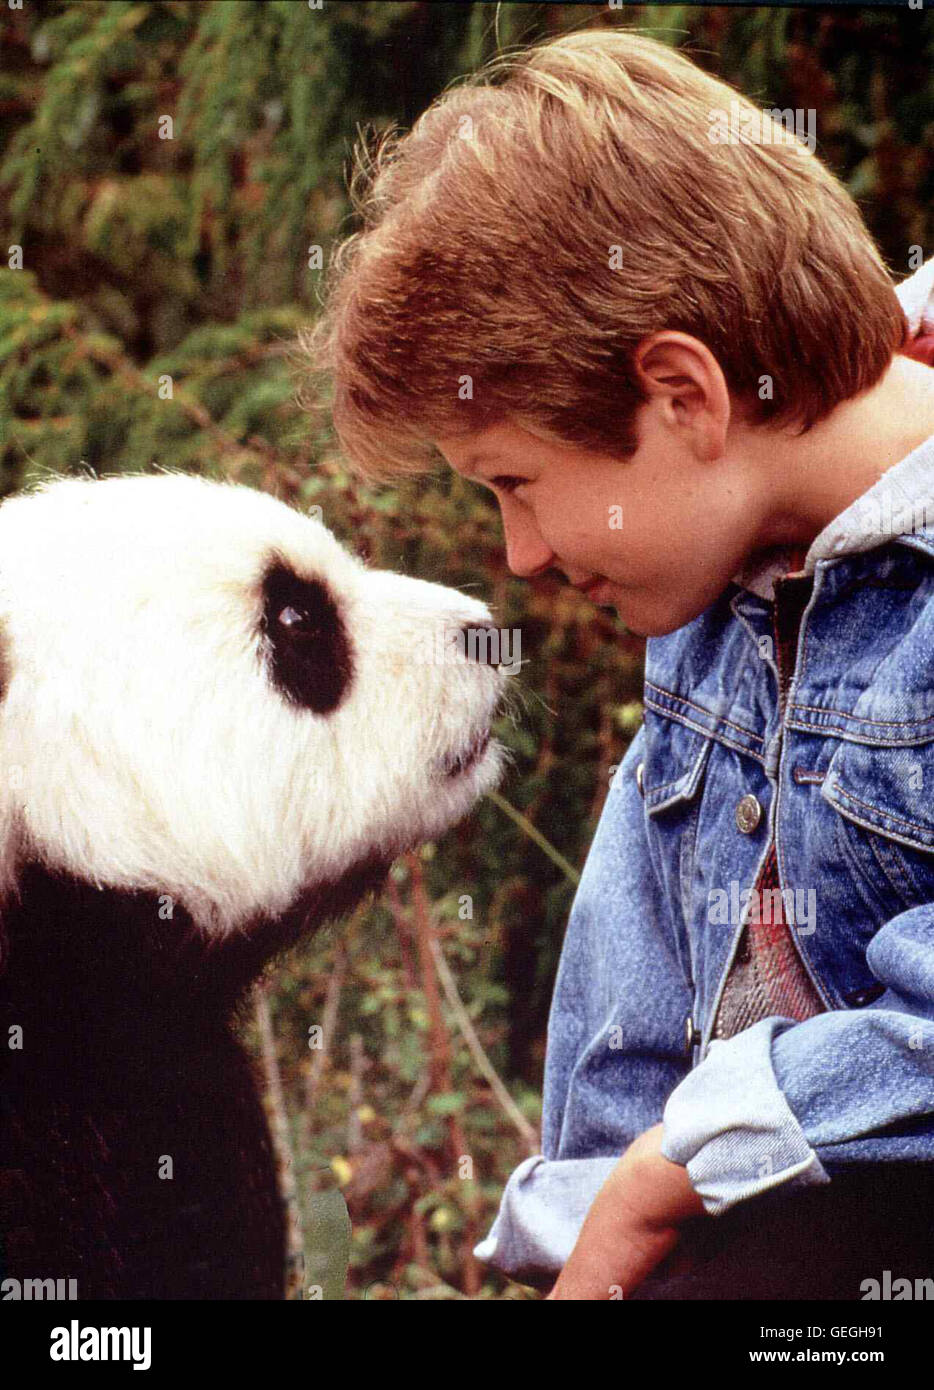 Ryan Slater   Ryan Tyler (Ryan Slater) verbringt seine Schulferien in einem chinesischen Reservat, wo sein Vater als Biologe arbeitet, um einen idealen Lebensraum fuer die letzten Pandabaeren zu schaffen. *** Local Caption *** 1995, Amazing Panda Adventur Stock Photo